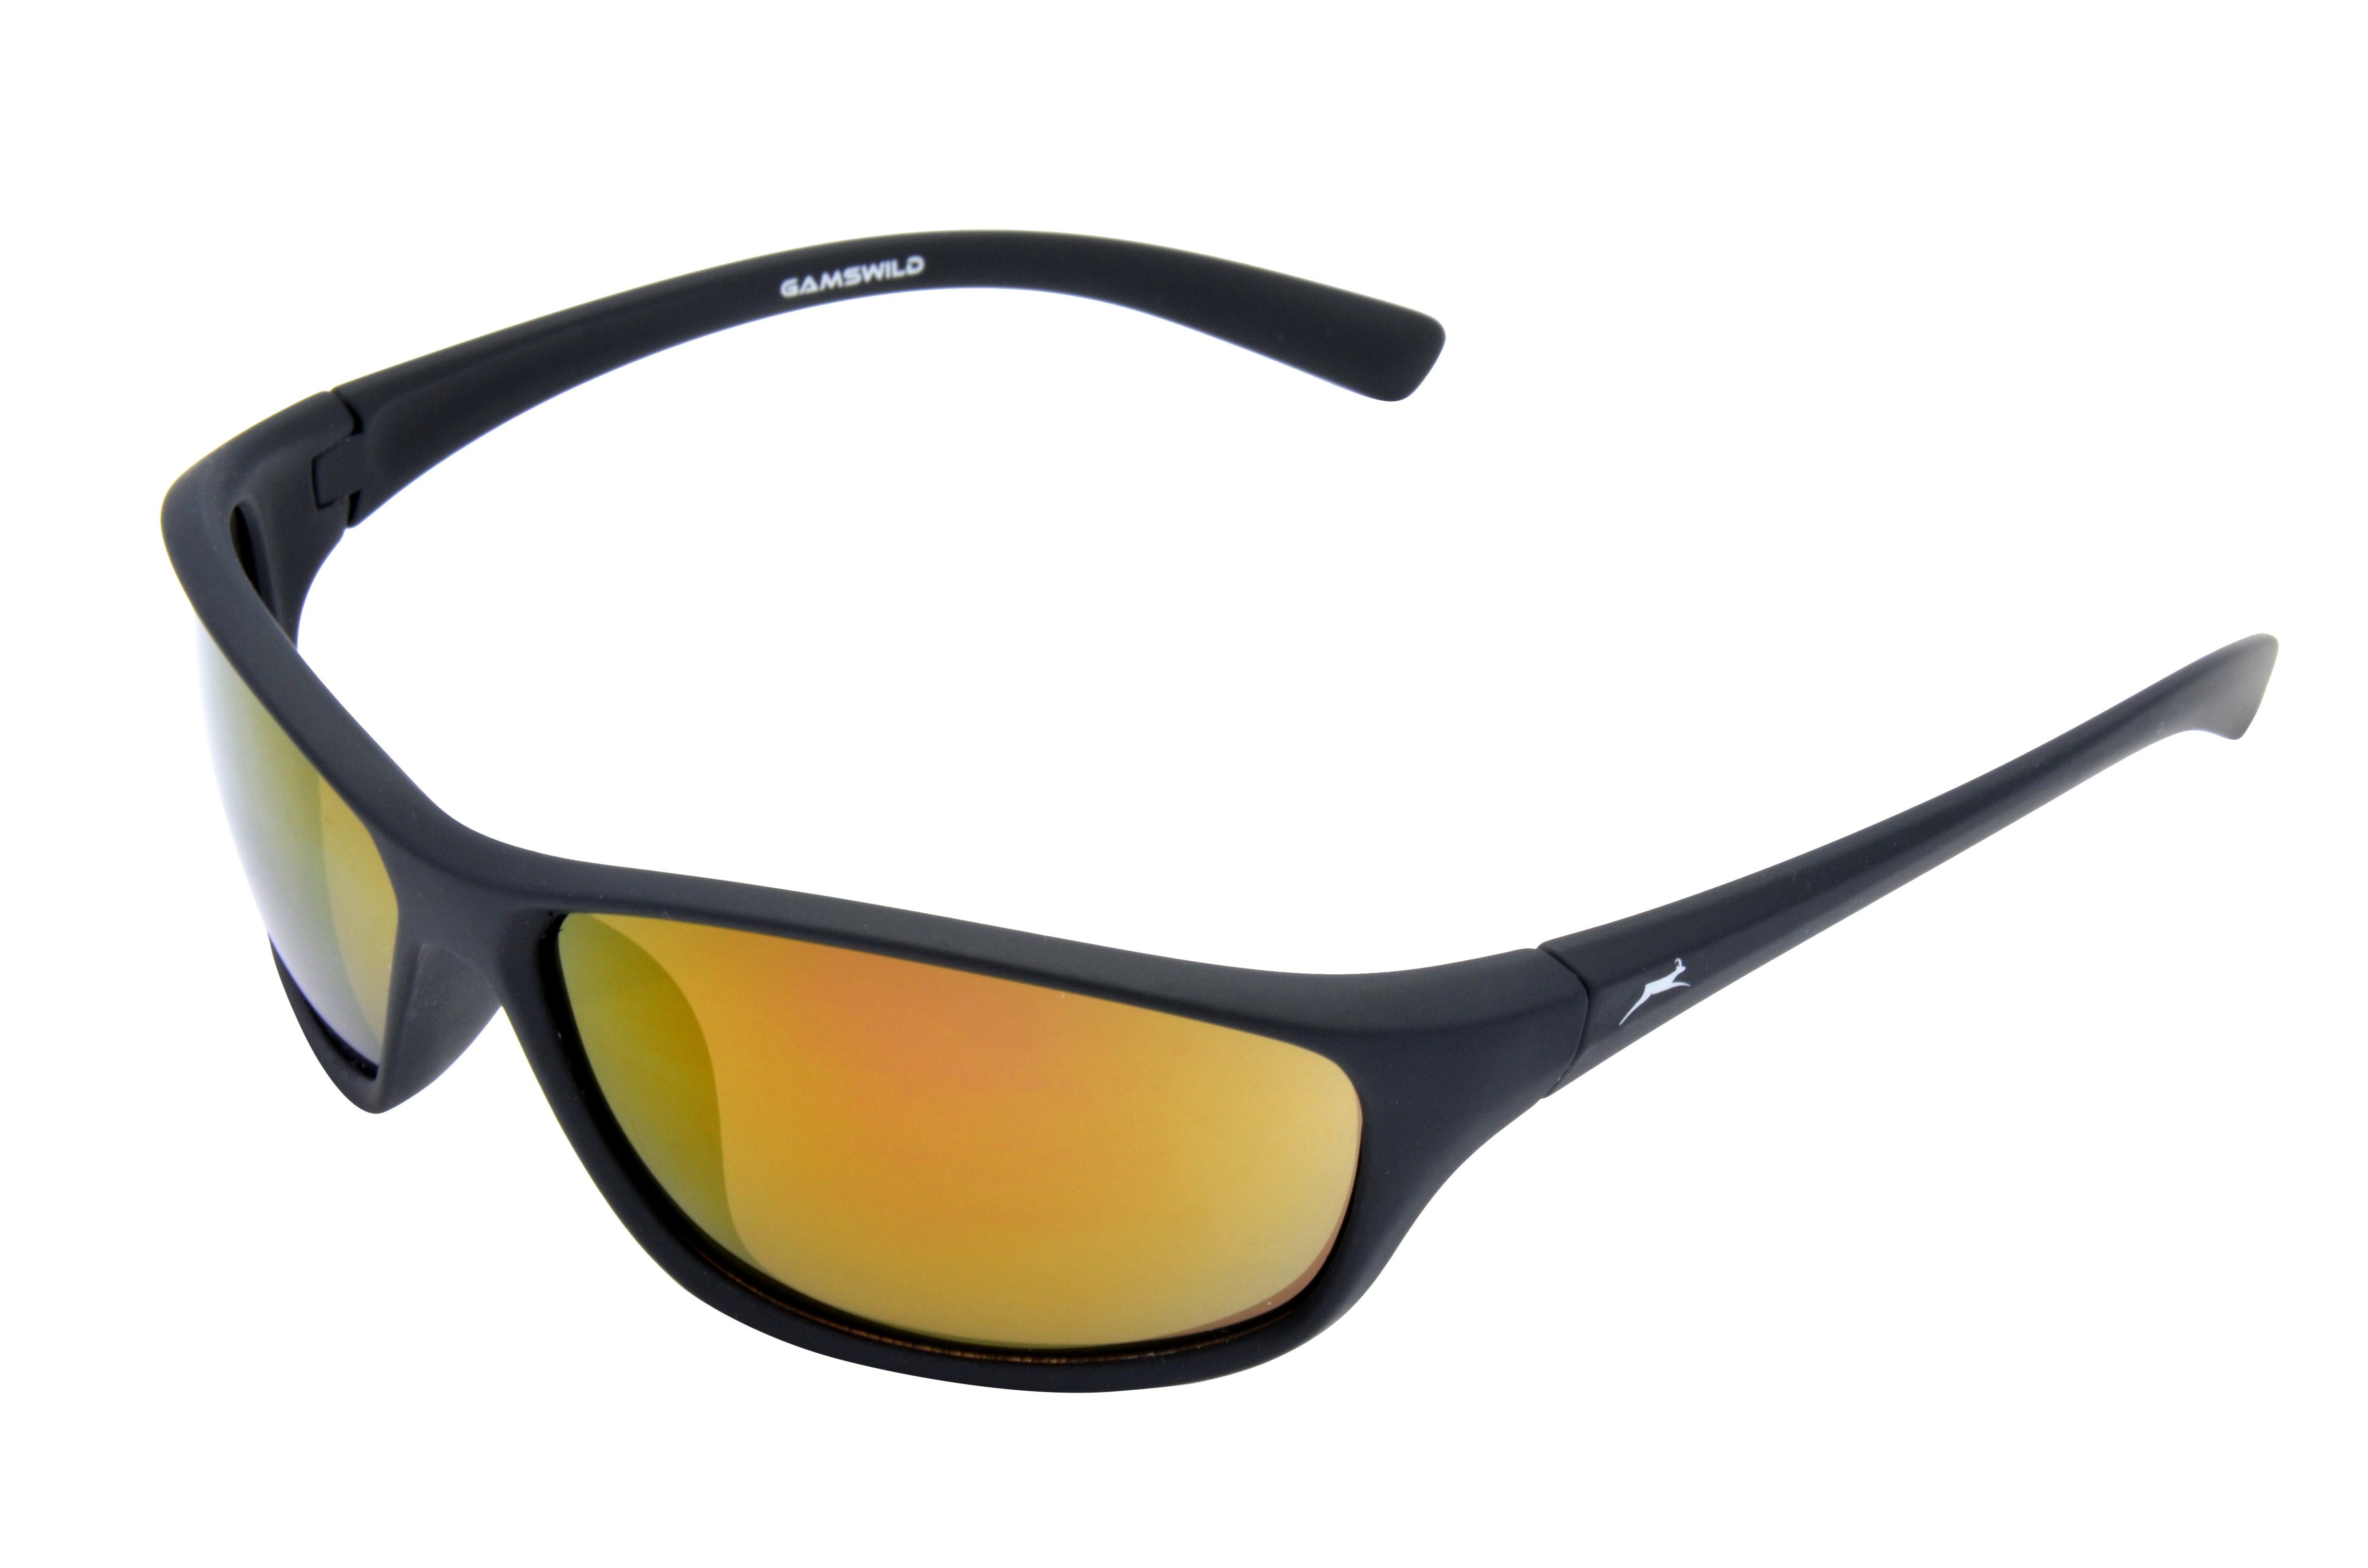 Gamswild Sonnenbrille WS6426 Sportbrille Damen Herren Fahrradbrille Skibrille Unisex, braun, grün, violett Softtouch